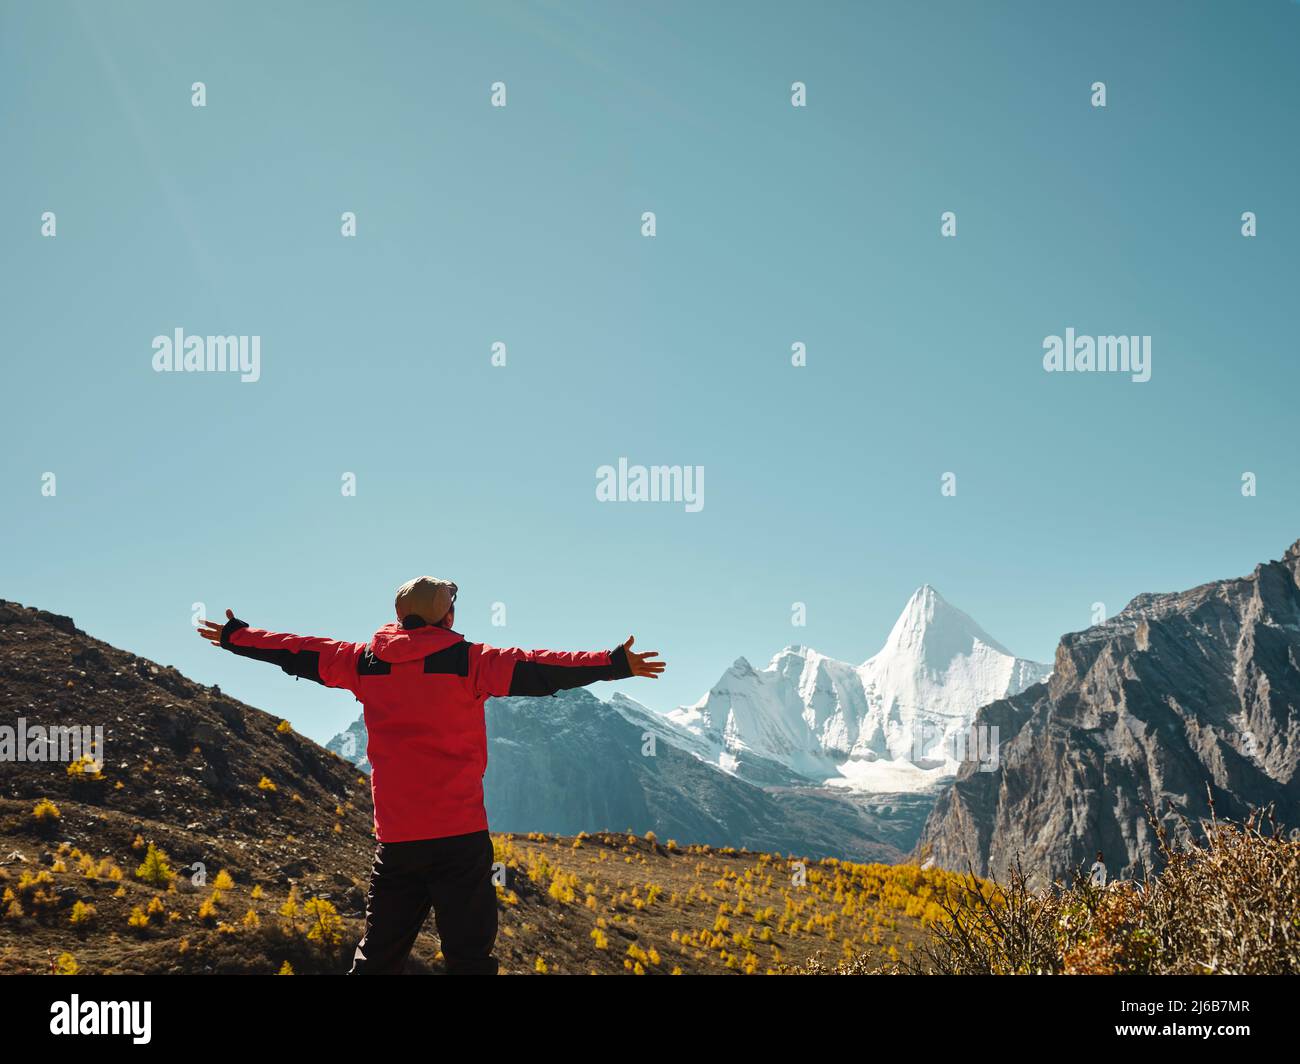 Rückansicht eines asiatischen Mannes, der auf einem nahe gelegenen Berg steht und den Berg Yangmaiyong (oder Jampayang auf Tibetisch) mit offenen Armen in Yading, Daocheng, anschaut Stockfoto